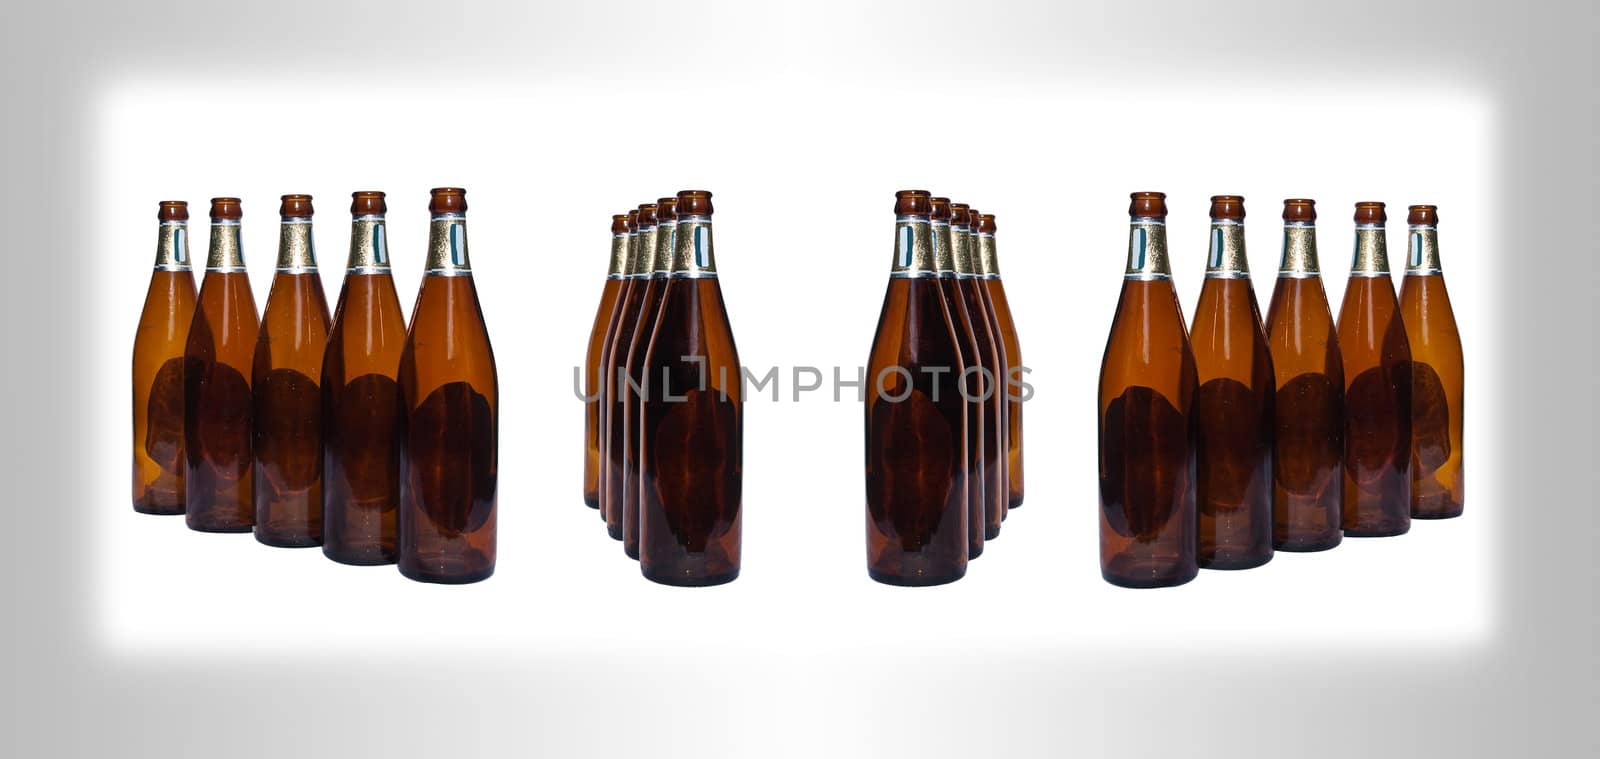 Beer bottles by Exsodus